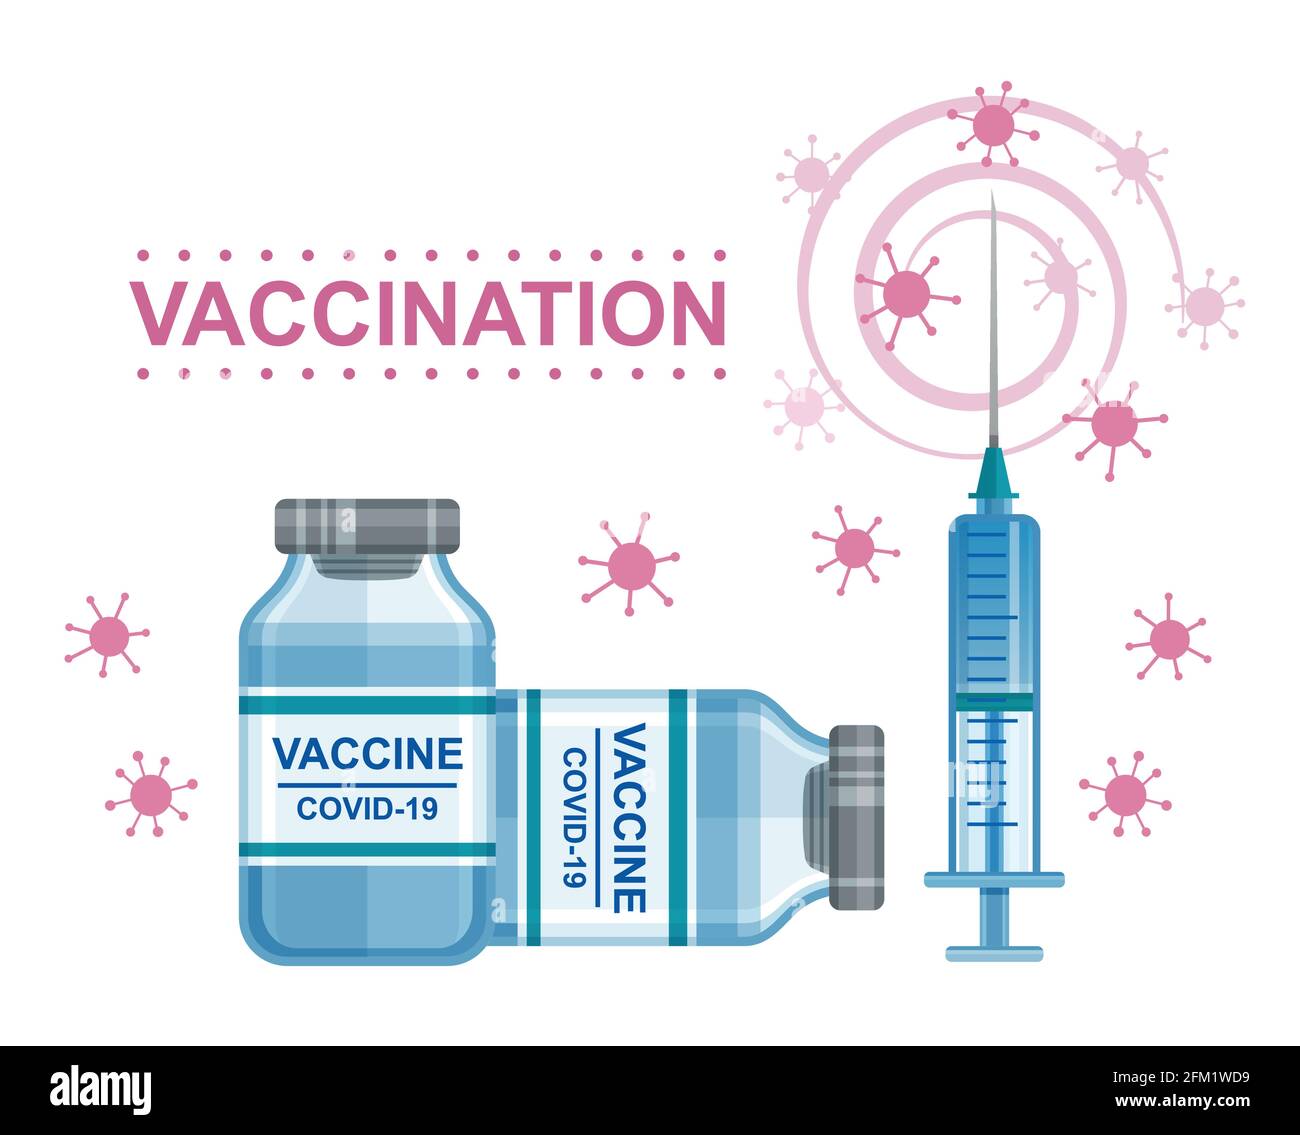 Coronavirus-Impfung. Covid-19-Impfstoff, Spritzeninjektion. Dosis Medikamentenlösung in der Flasche. Immunität Gesundheit, Immunisierung. Viren verhindern. Vektor Stock Vektor